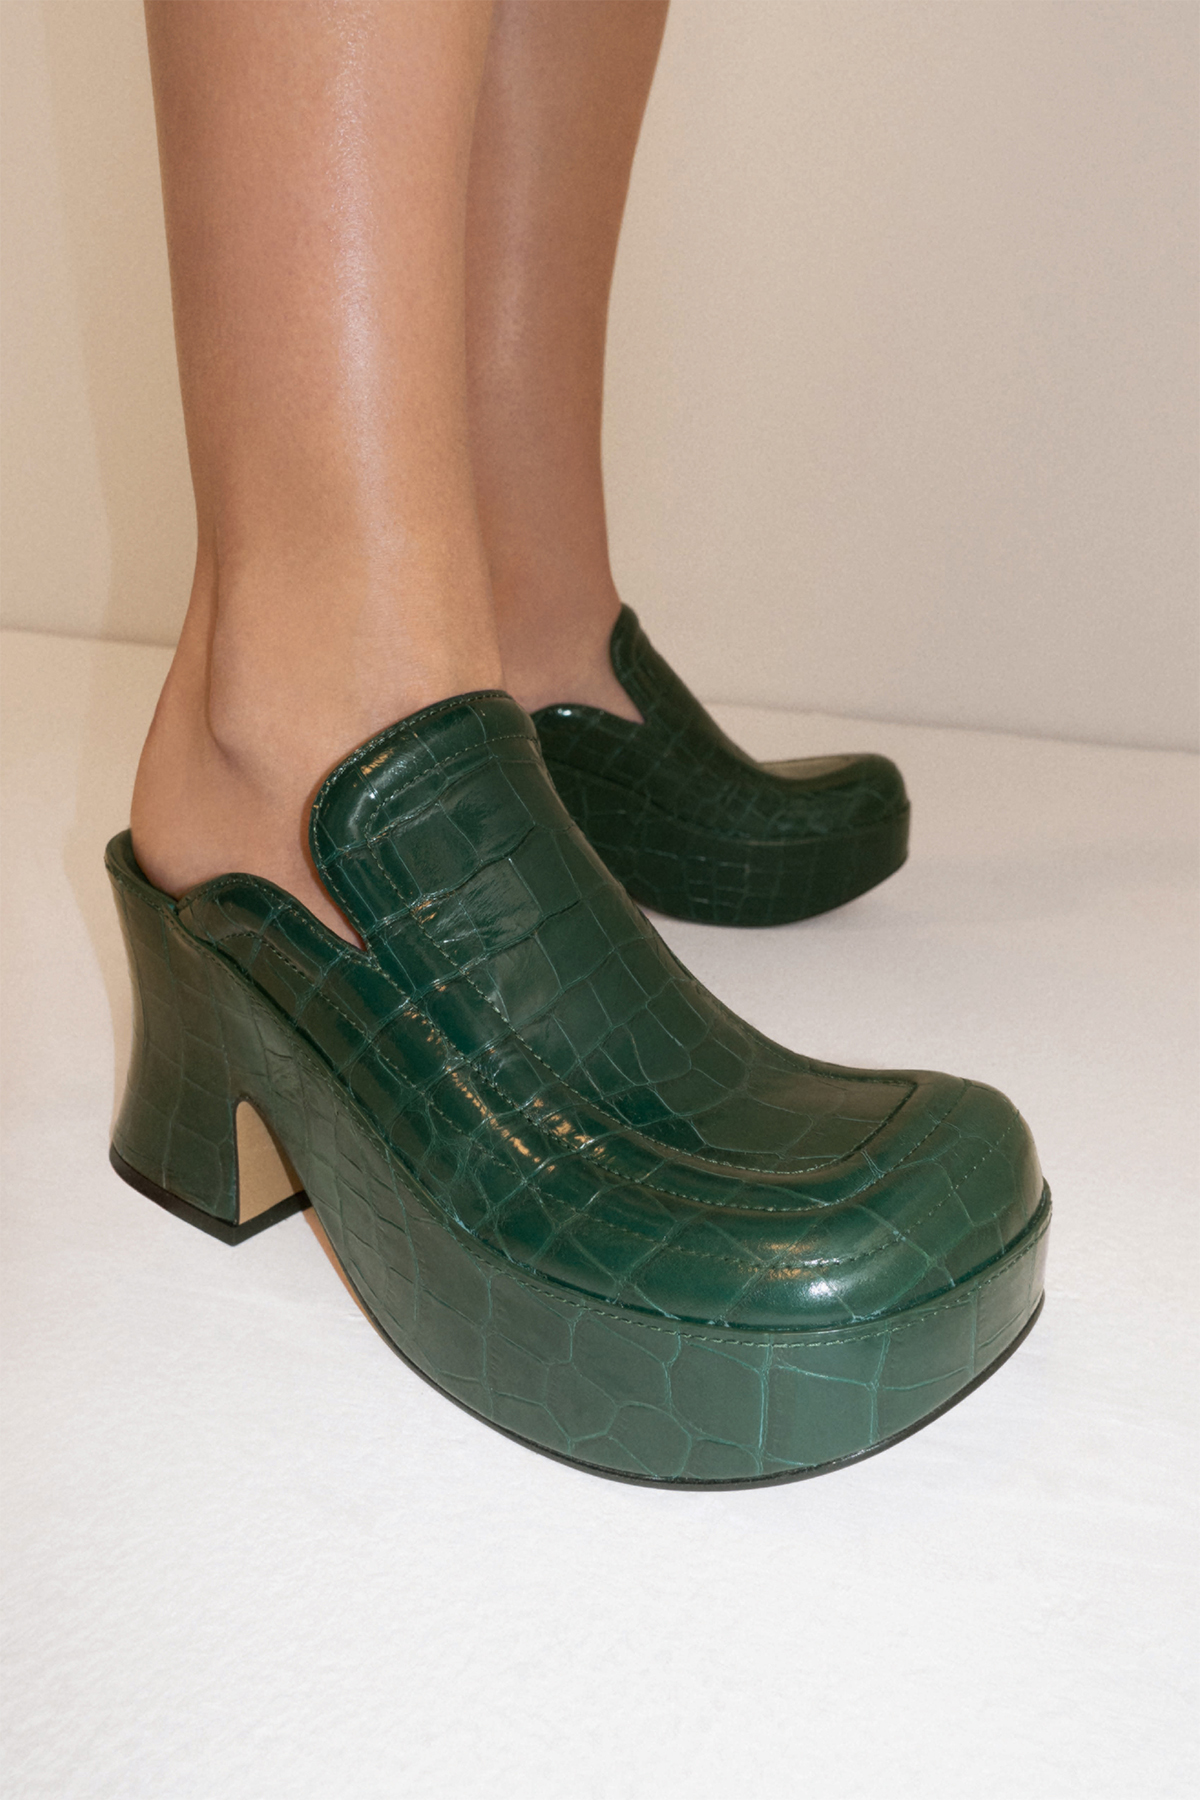 Bottega Veneta выпустил новую коллекцию обуви (фото 4)